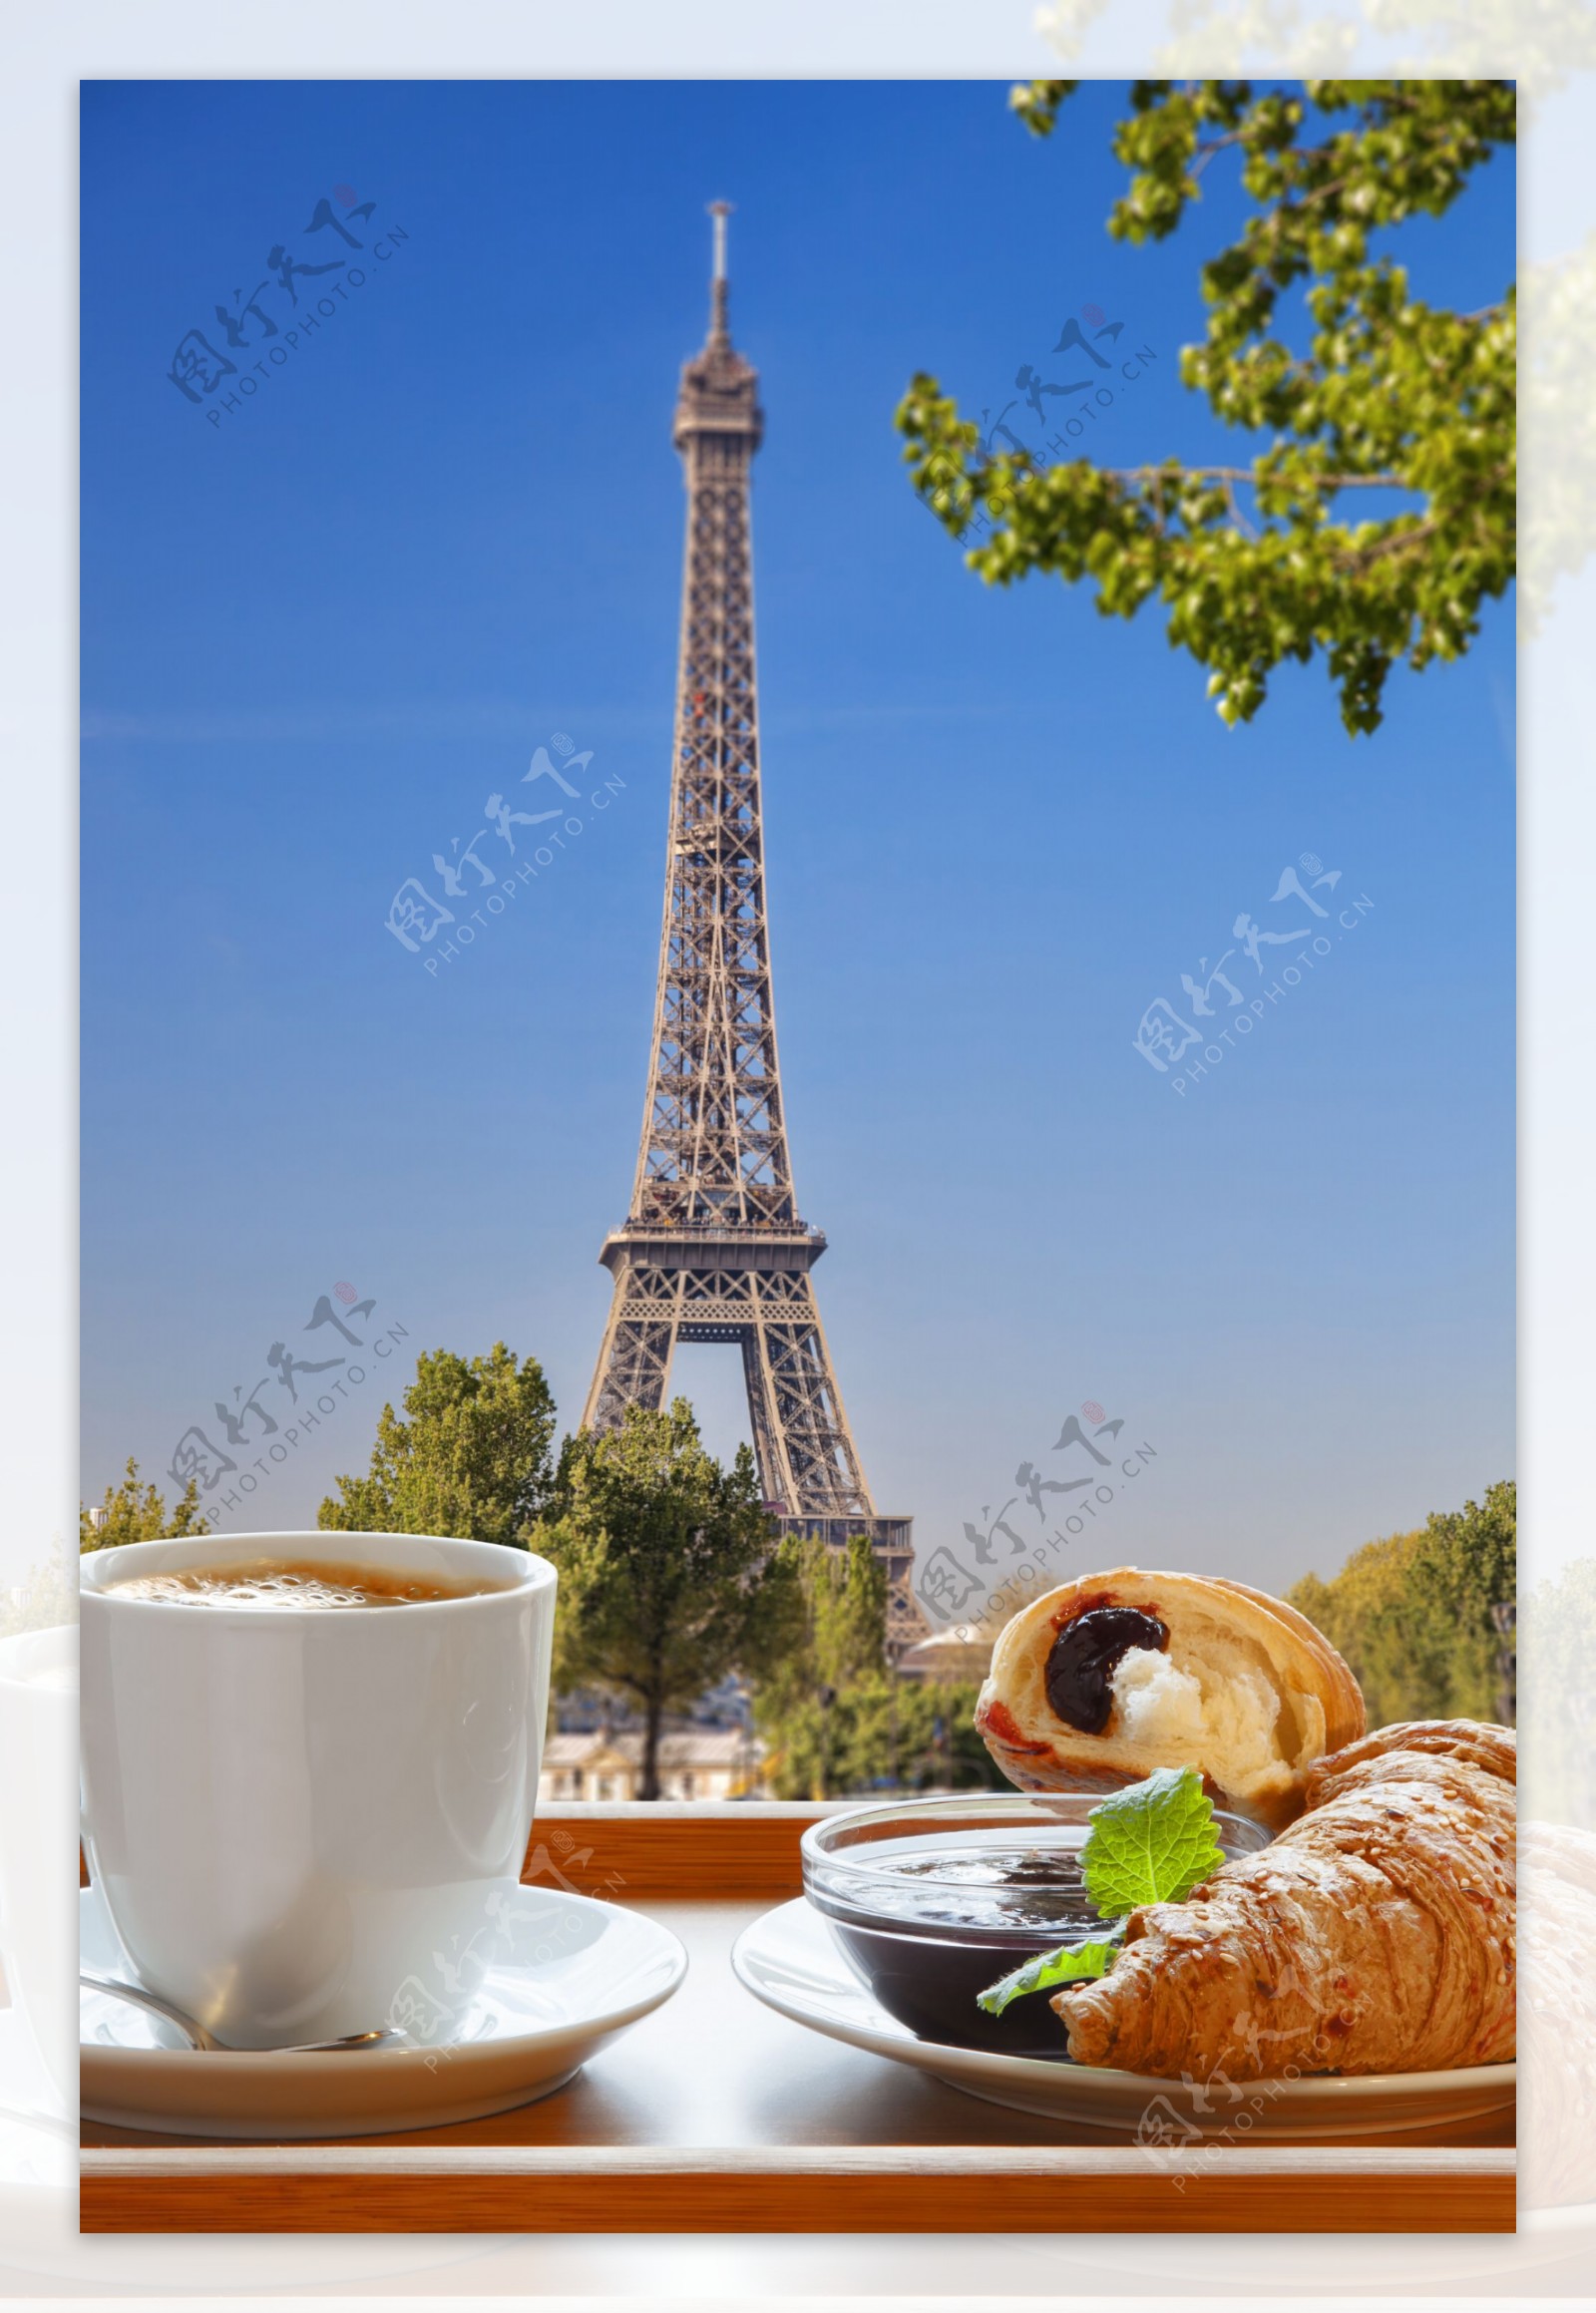 菲尔铁塔下的咖啡与面包图片